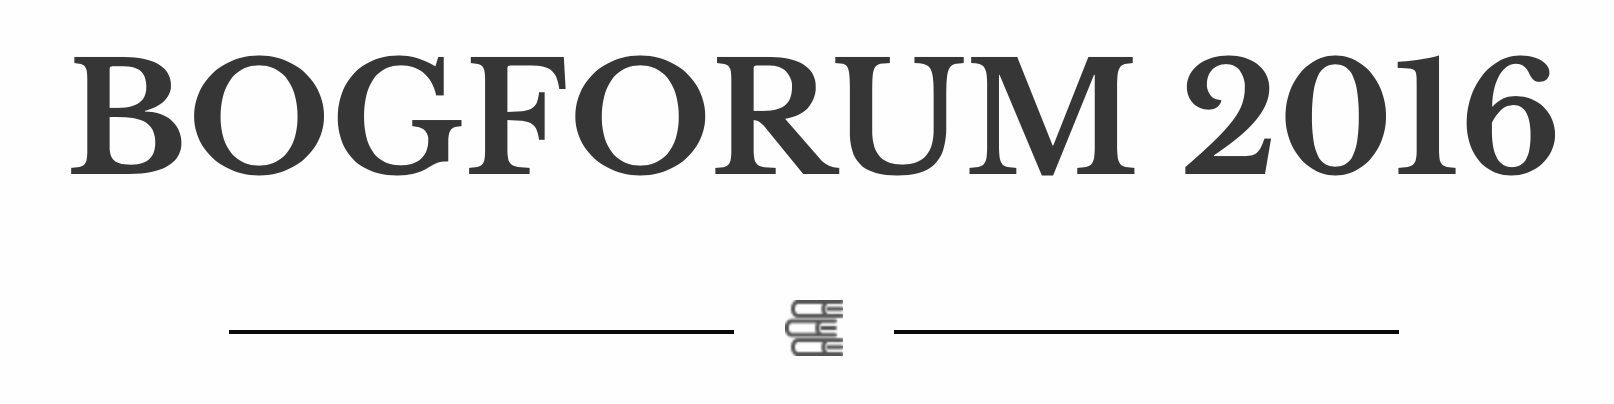 Bogforum logo - kulturmor